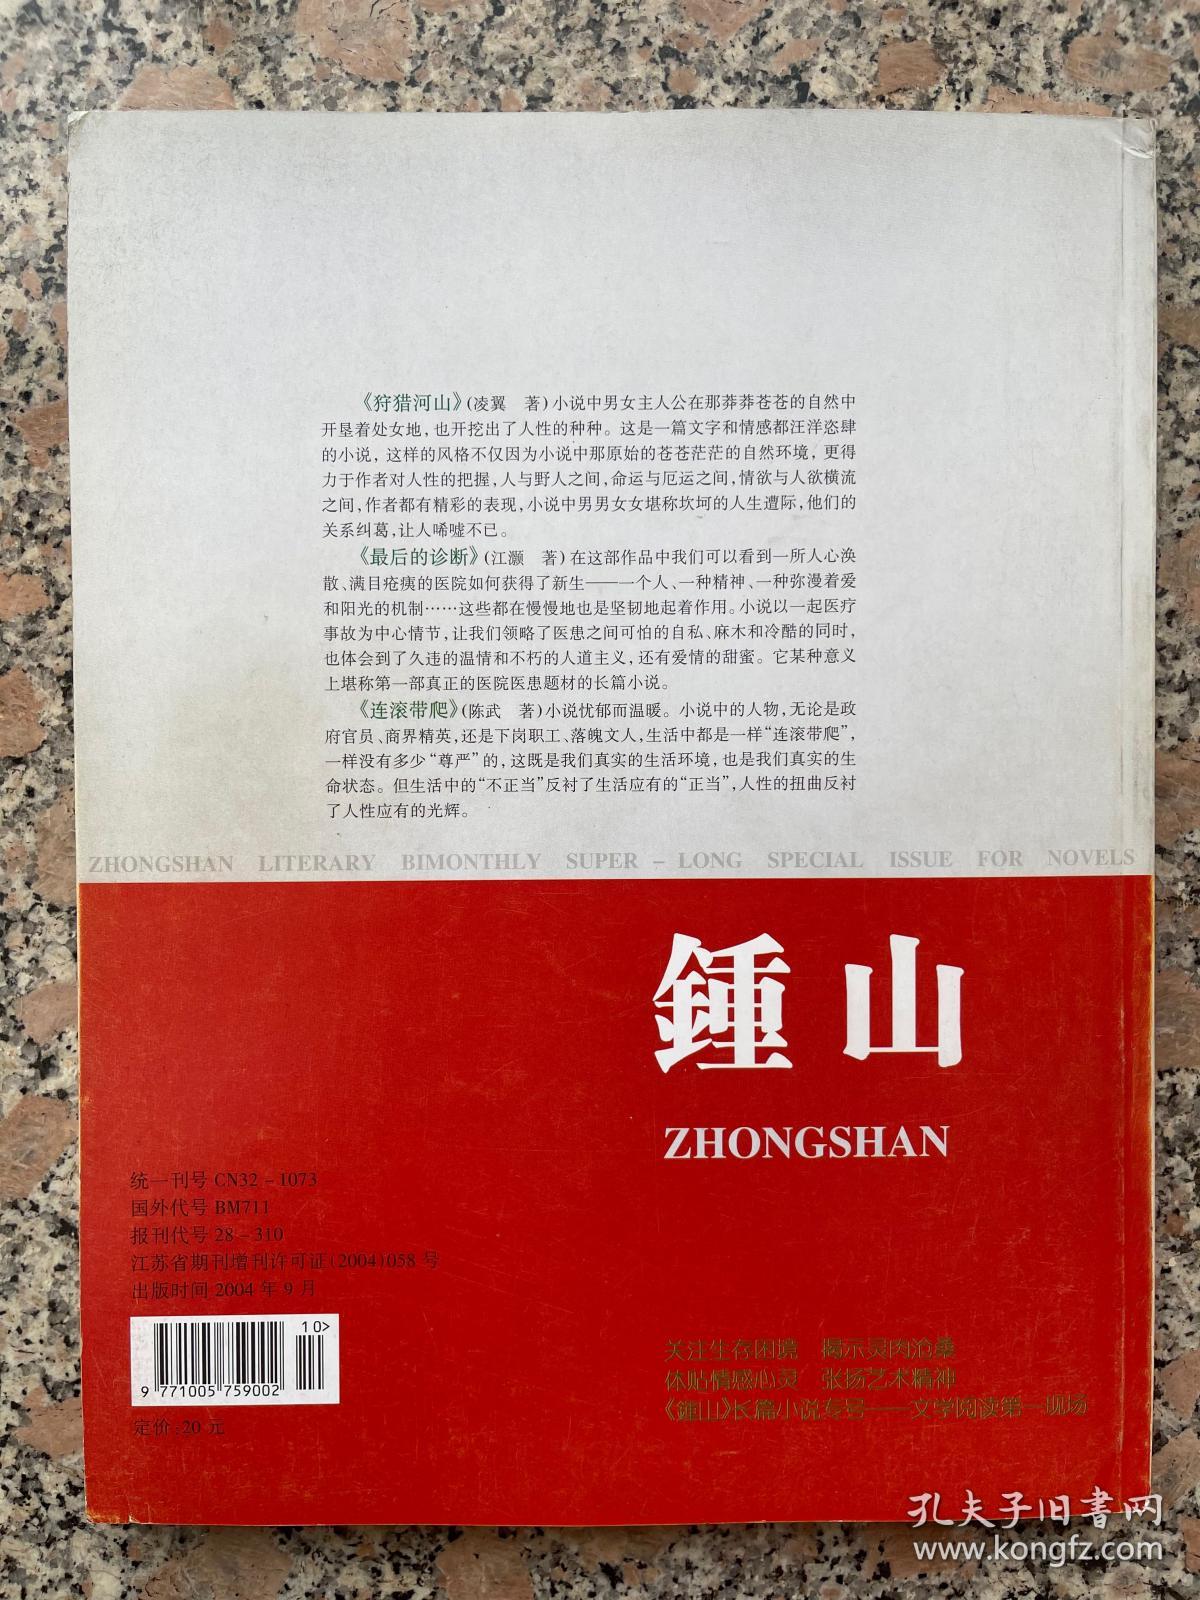 钟山2004年长篇小说专号增刊B卷创刊25周年纪念